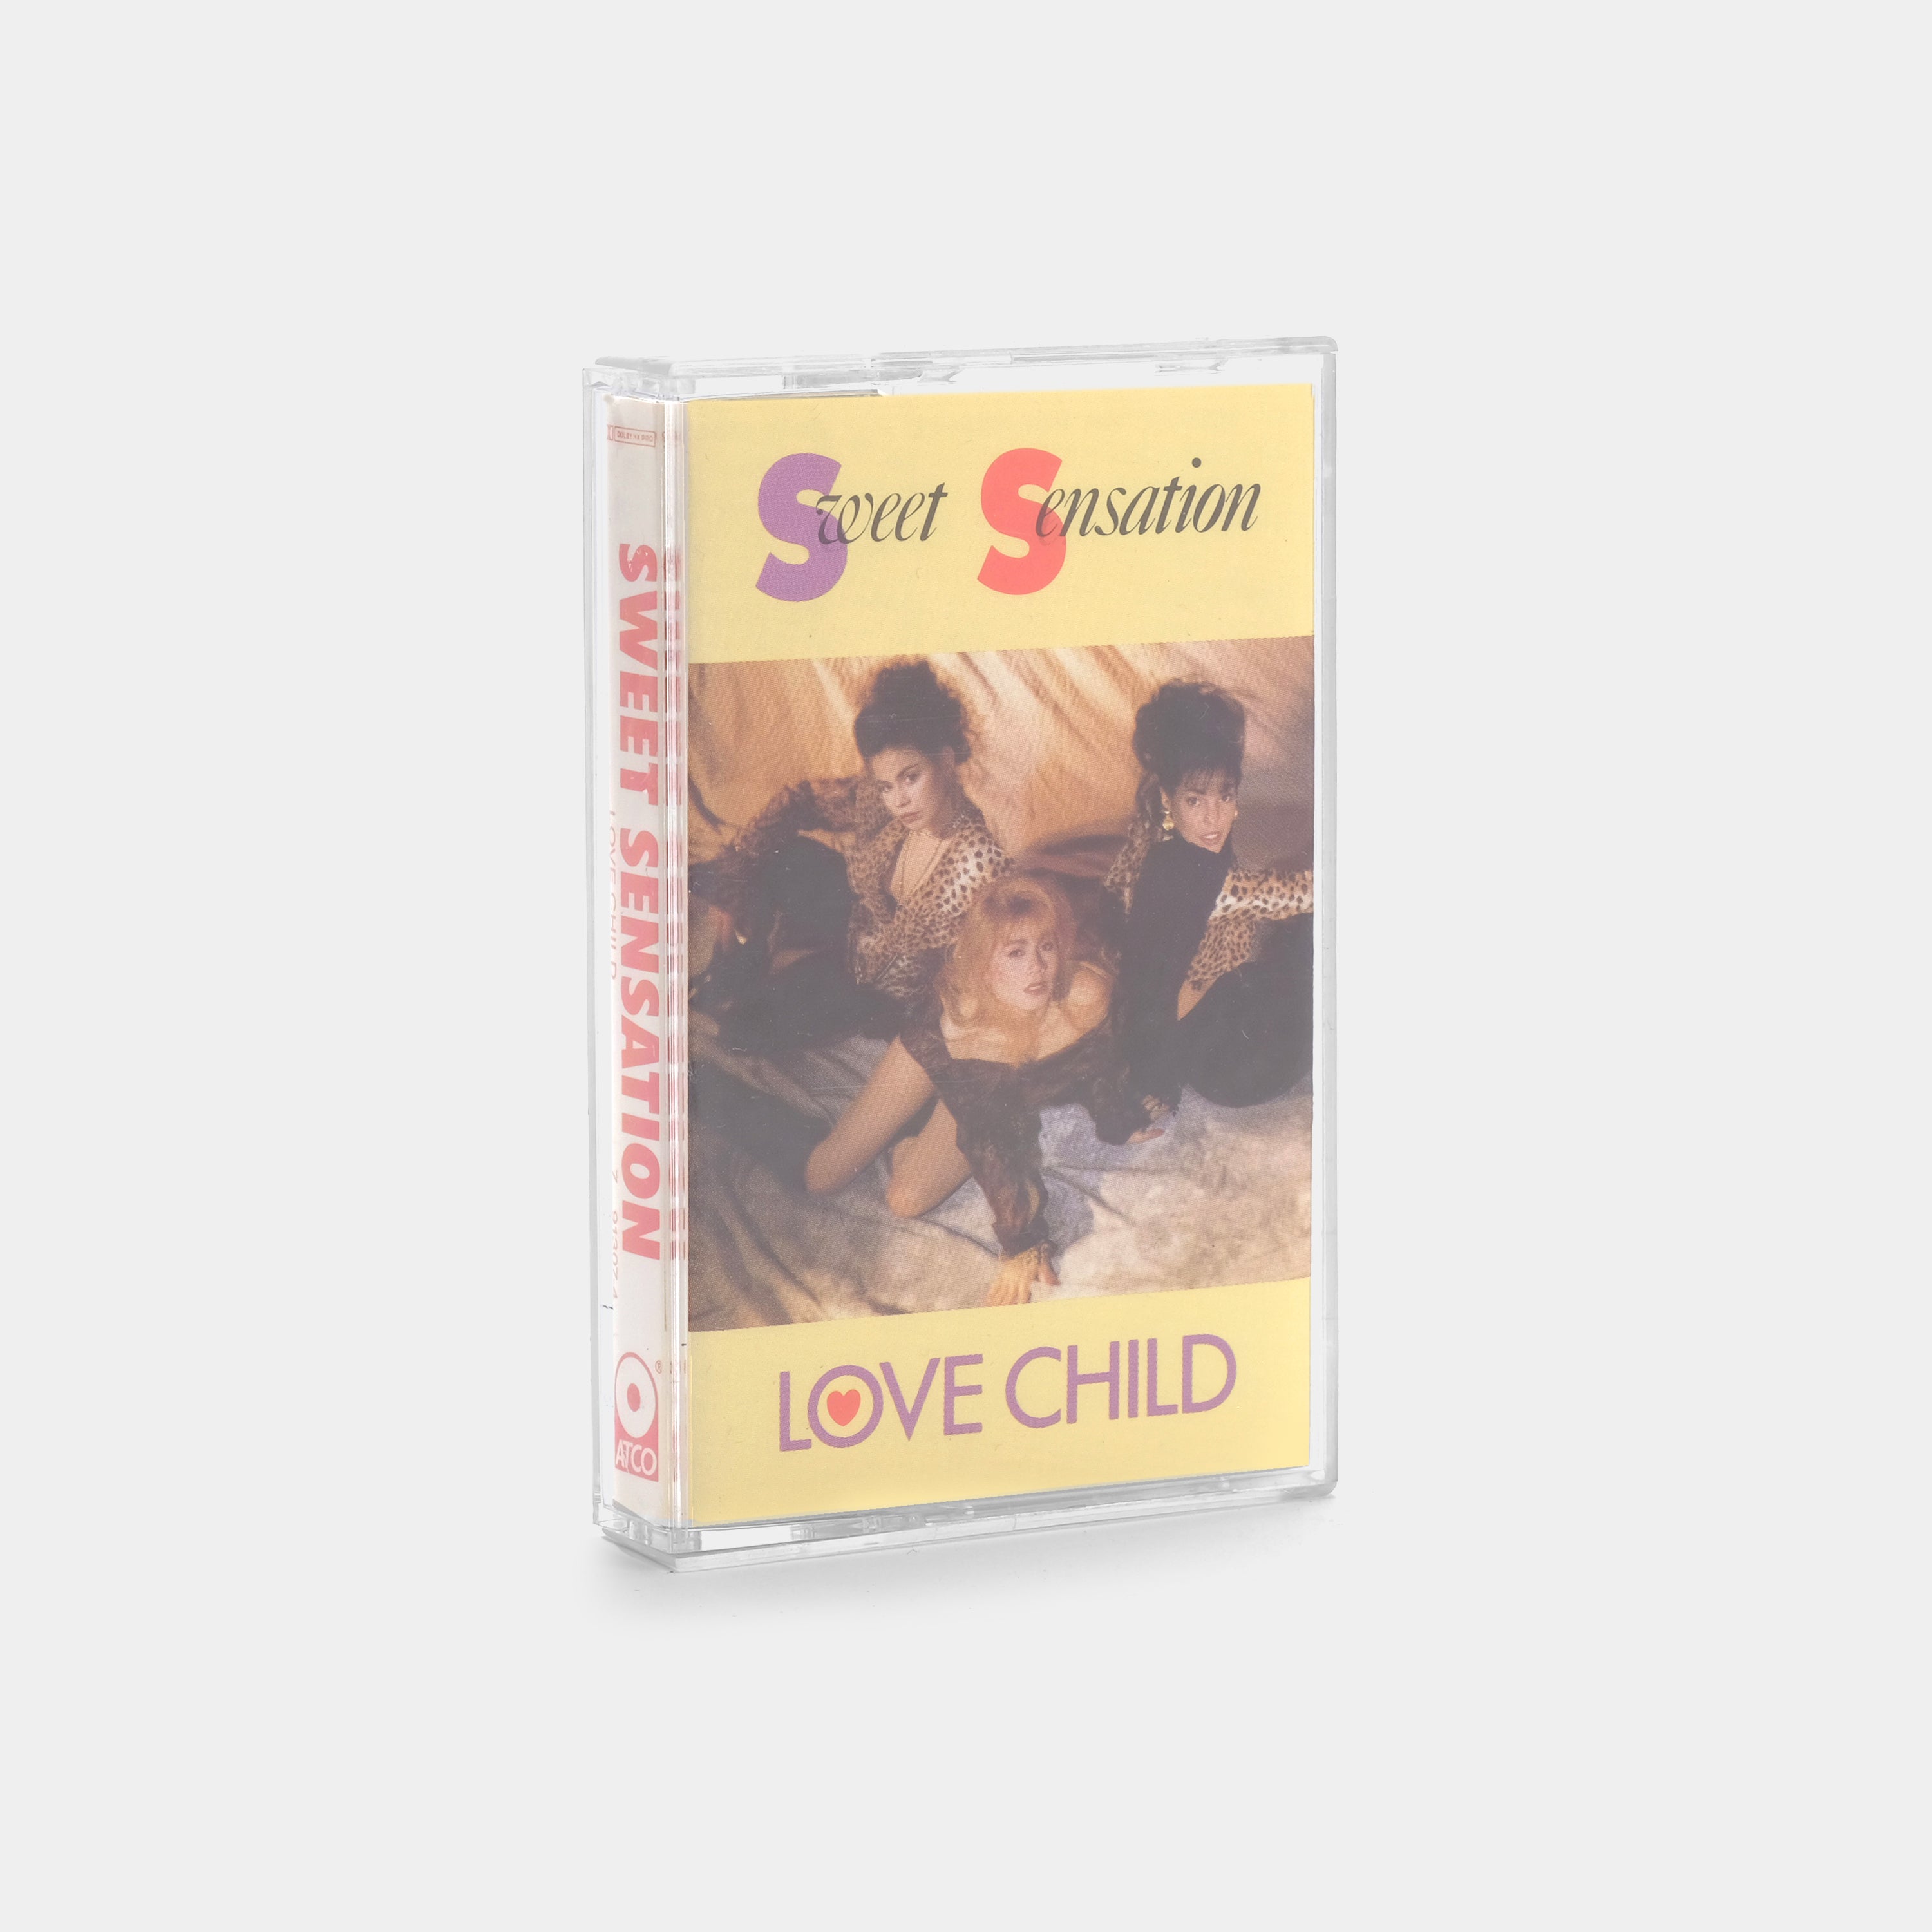 Sweet Sensation - Love Child Cassette Tape